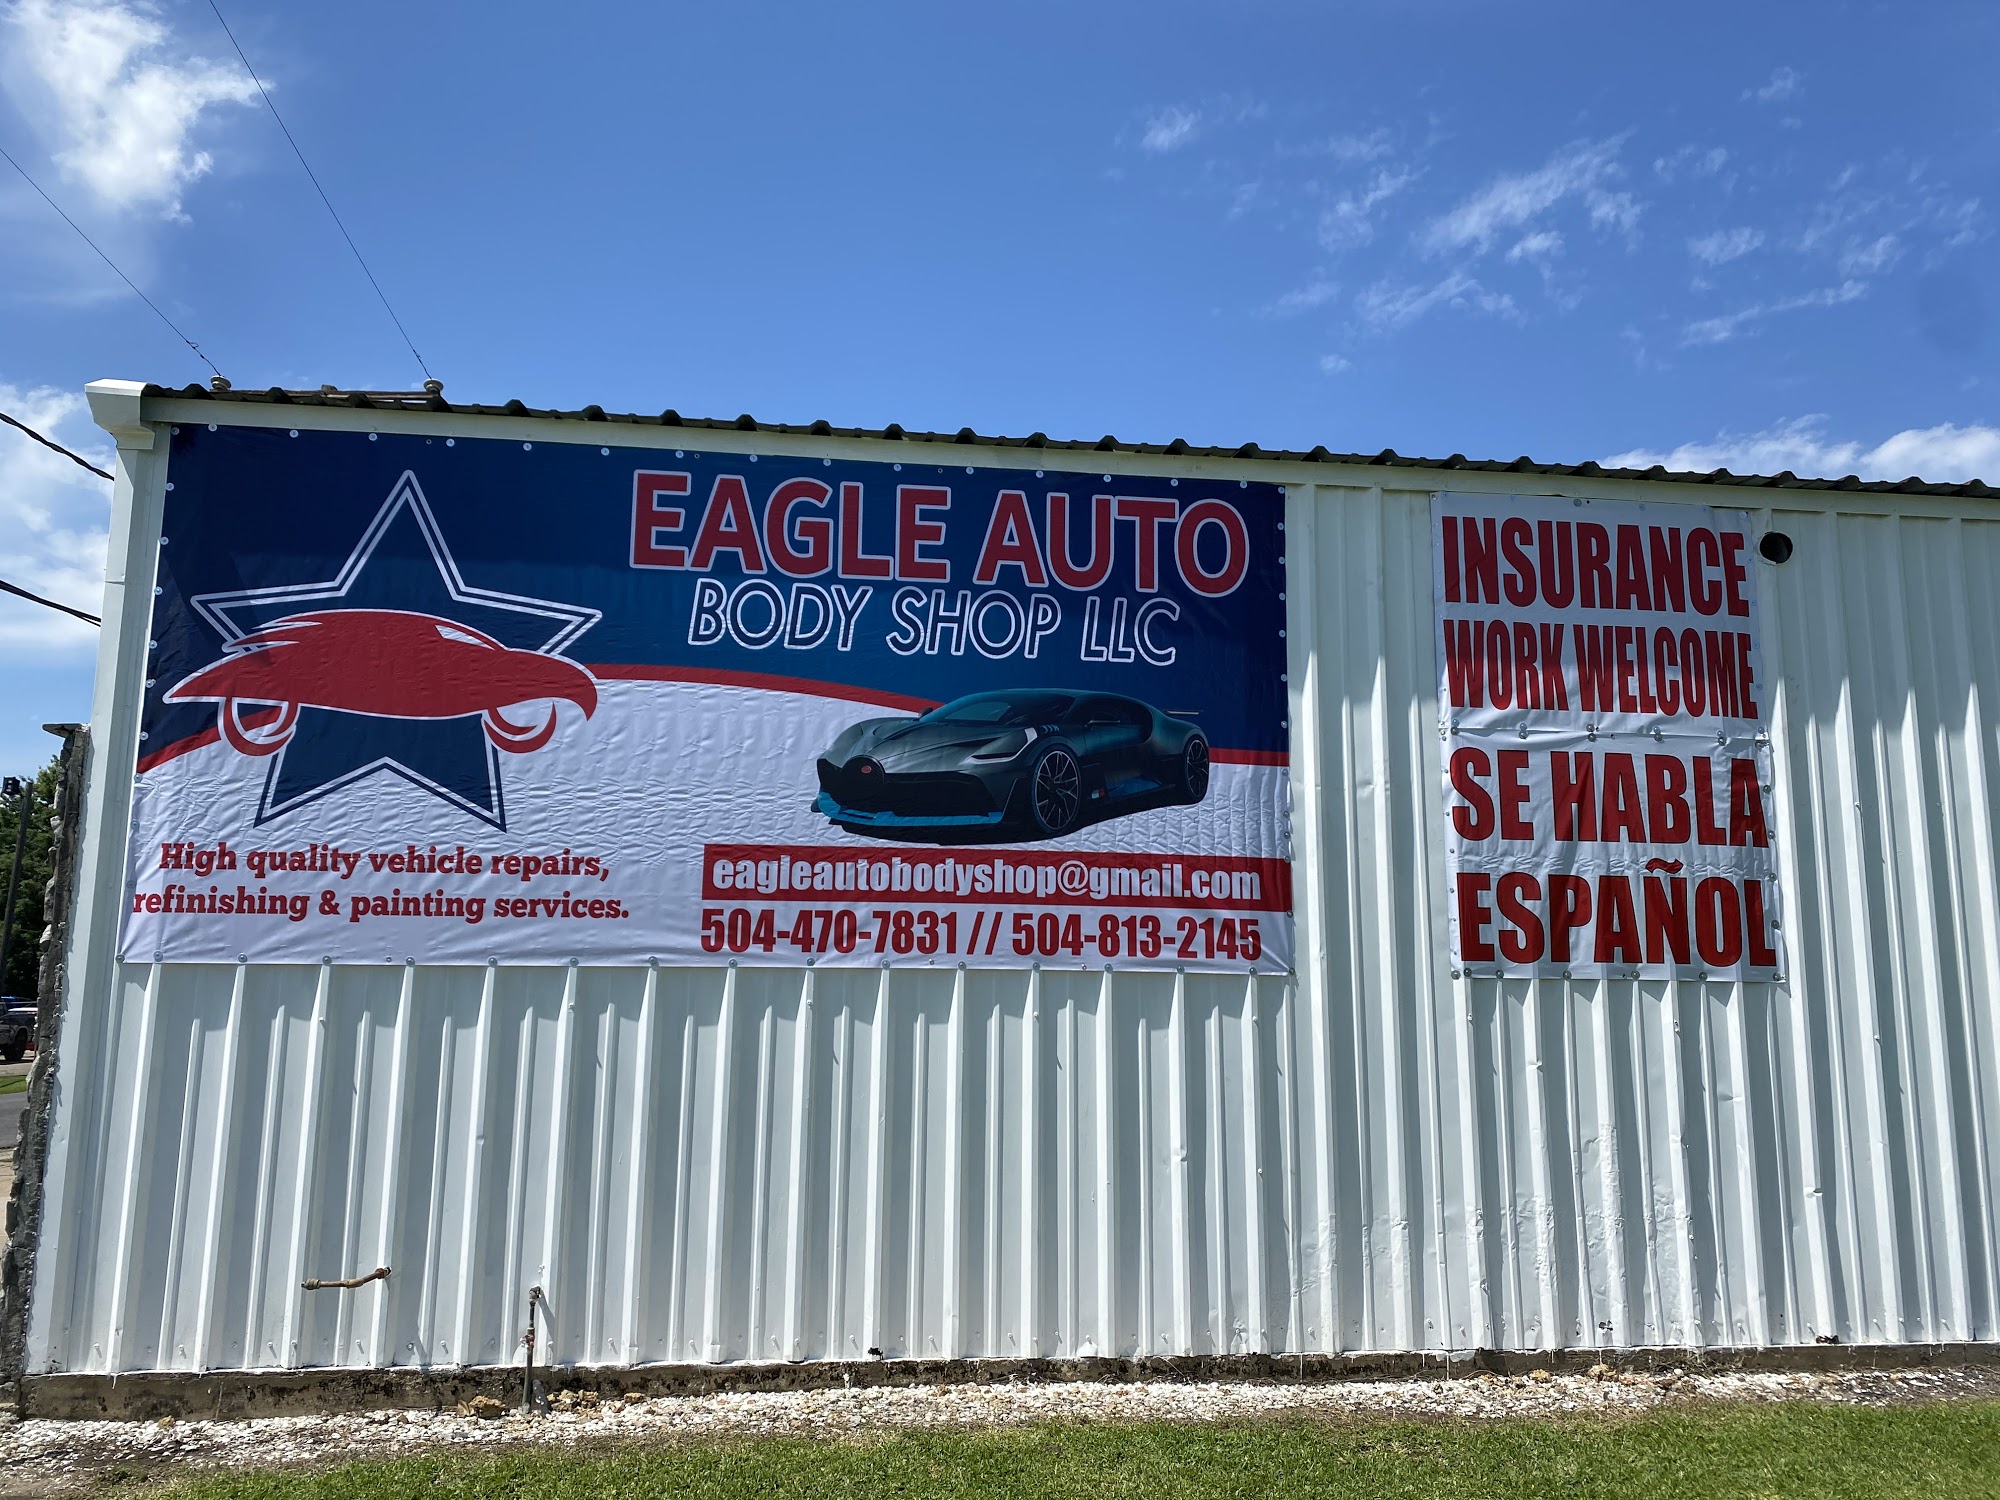 Eagle Auto Body Shop LLC